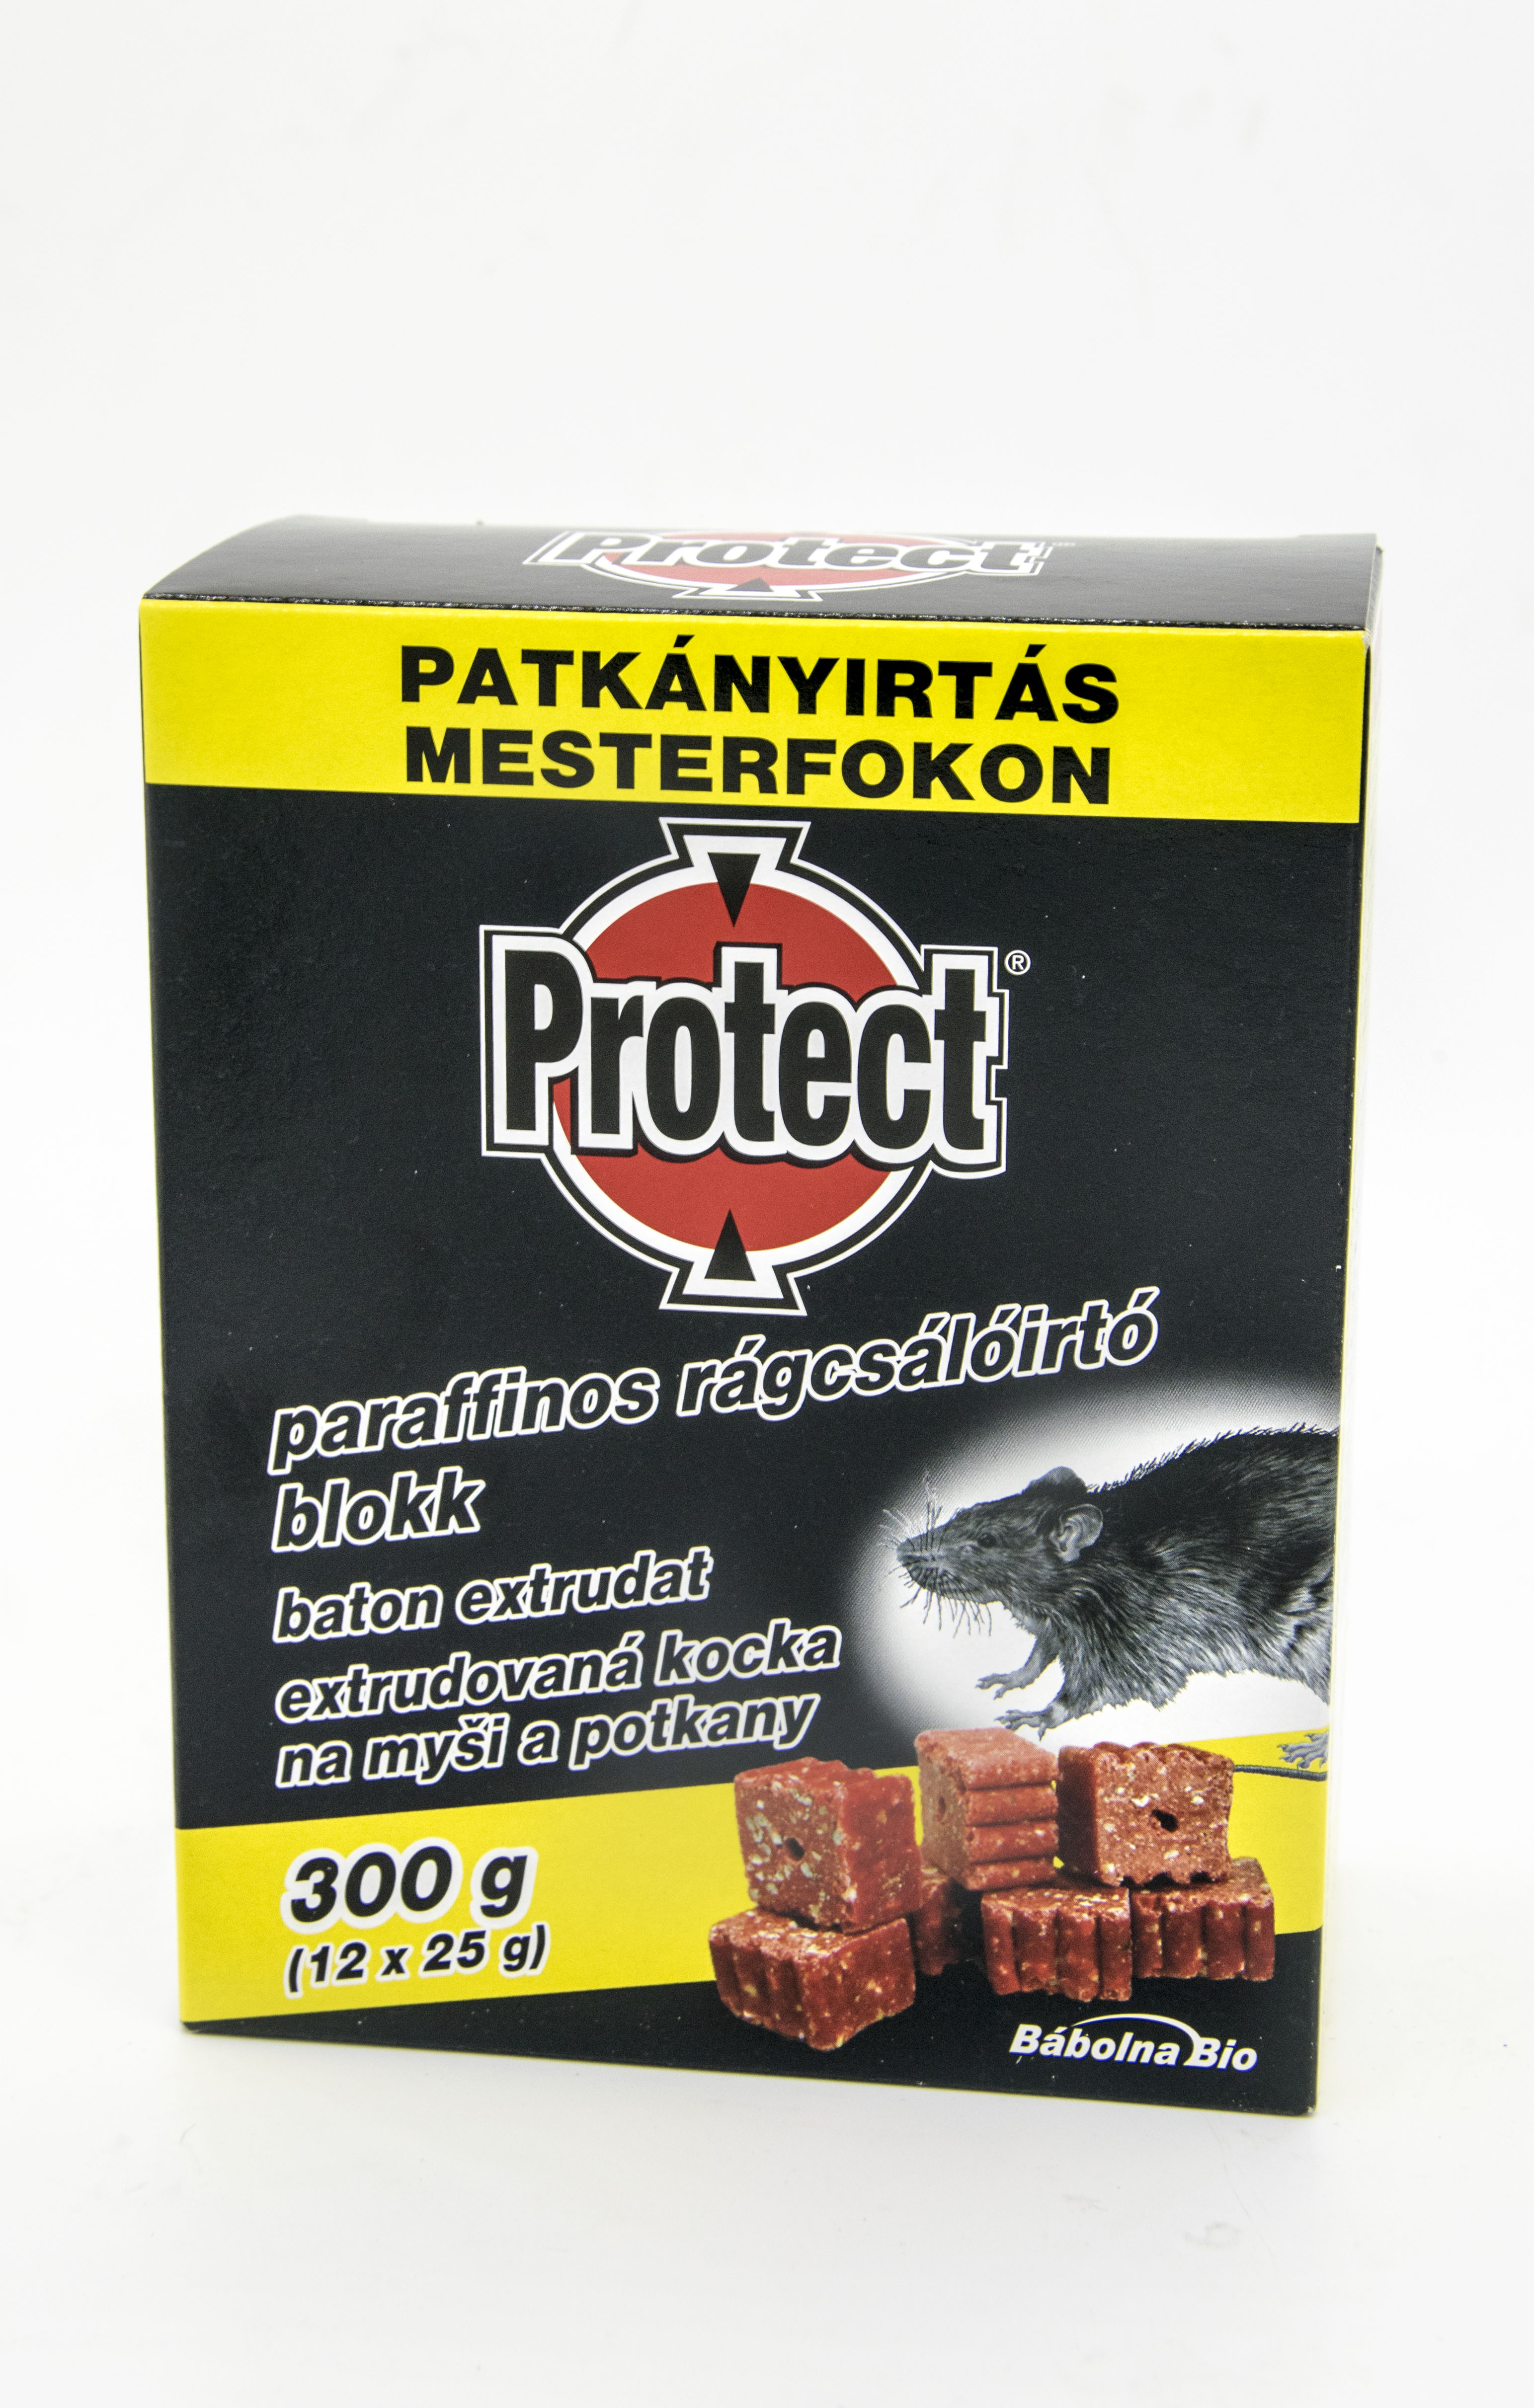 Protect paraffinos rágcsálóirtó blokk 12x25 g